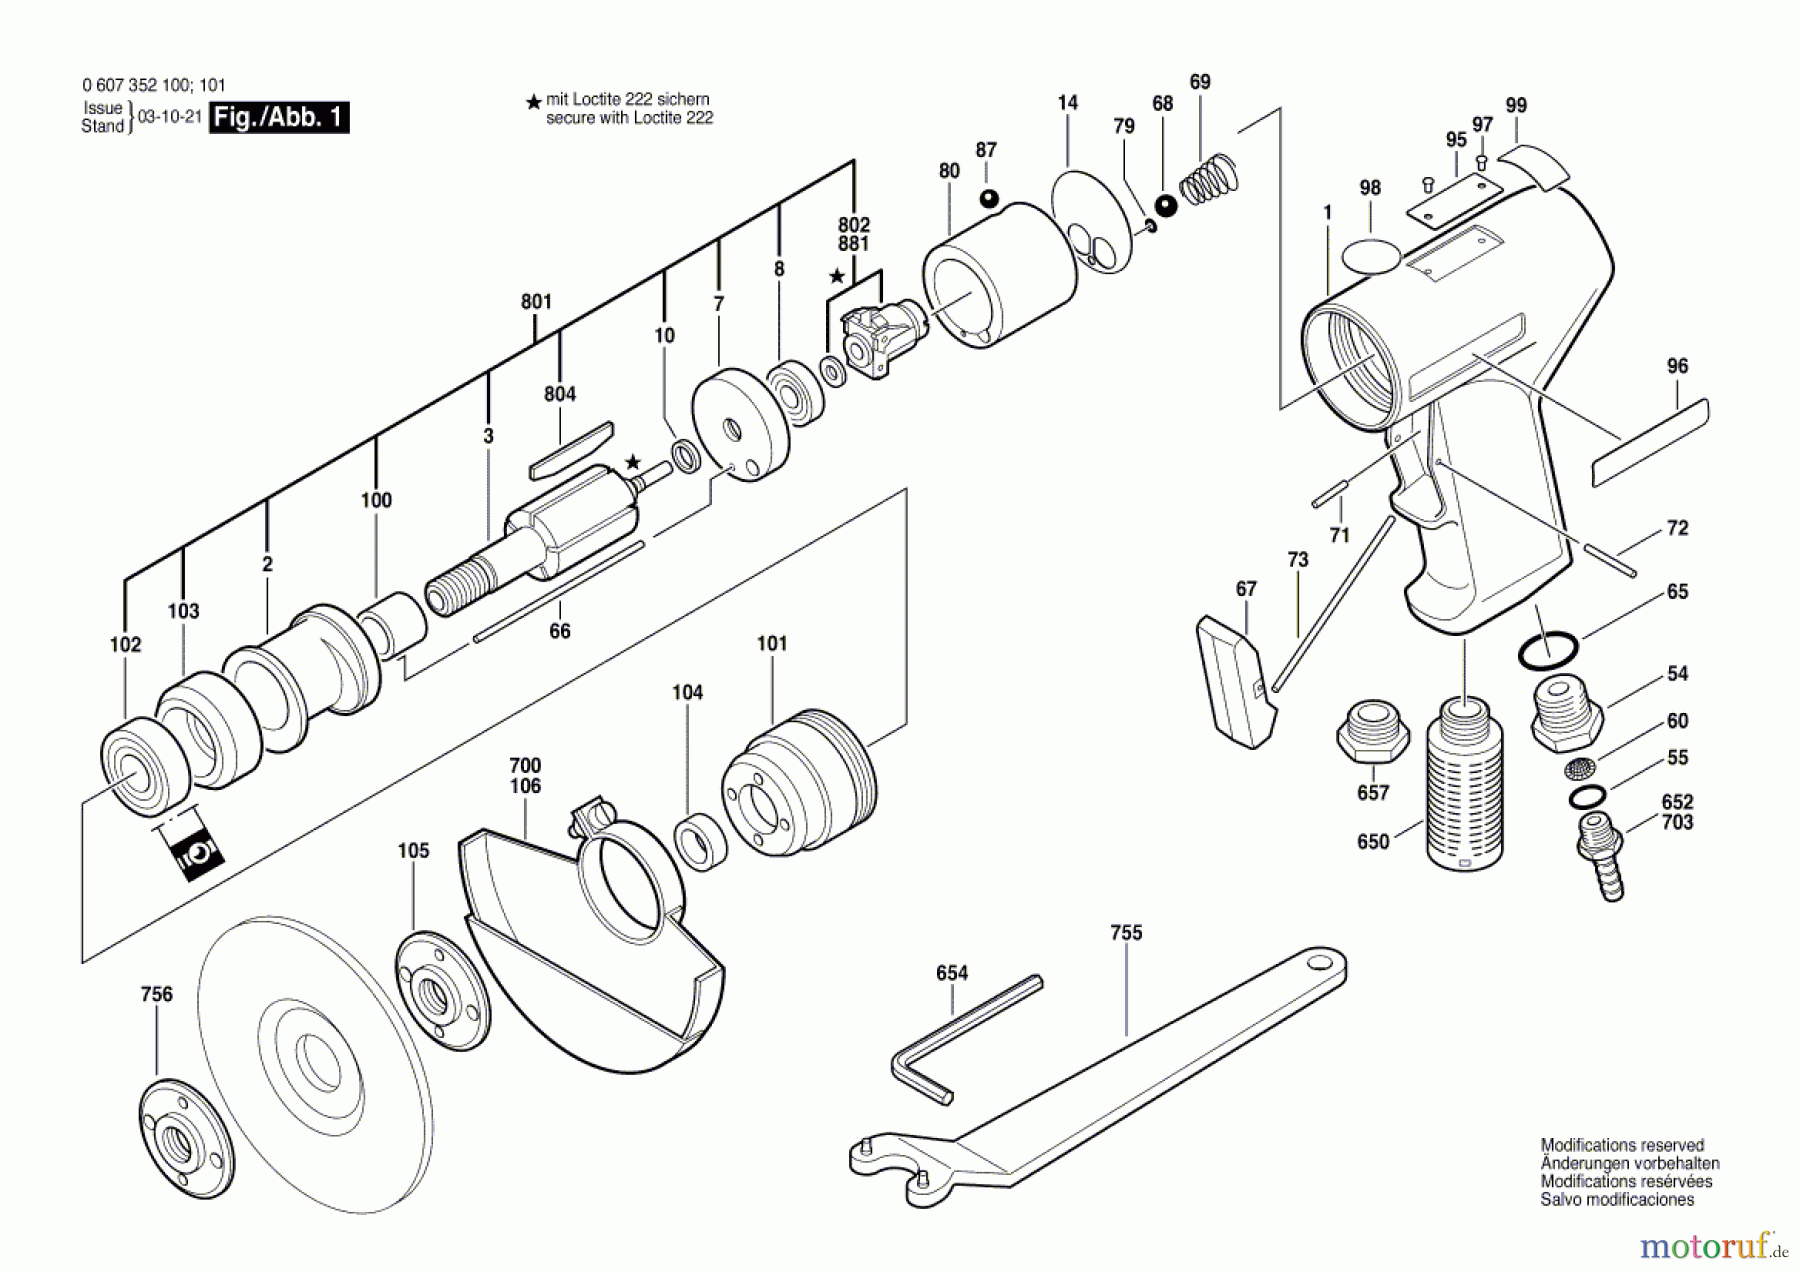  Bosch Werkzeug Pw-Vertikalschleifer 550 WATT-SERIE Seite 1